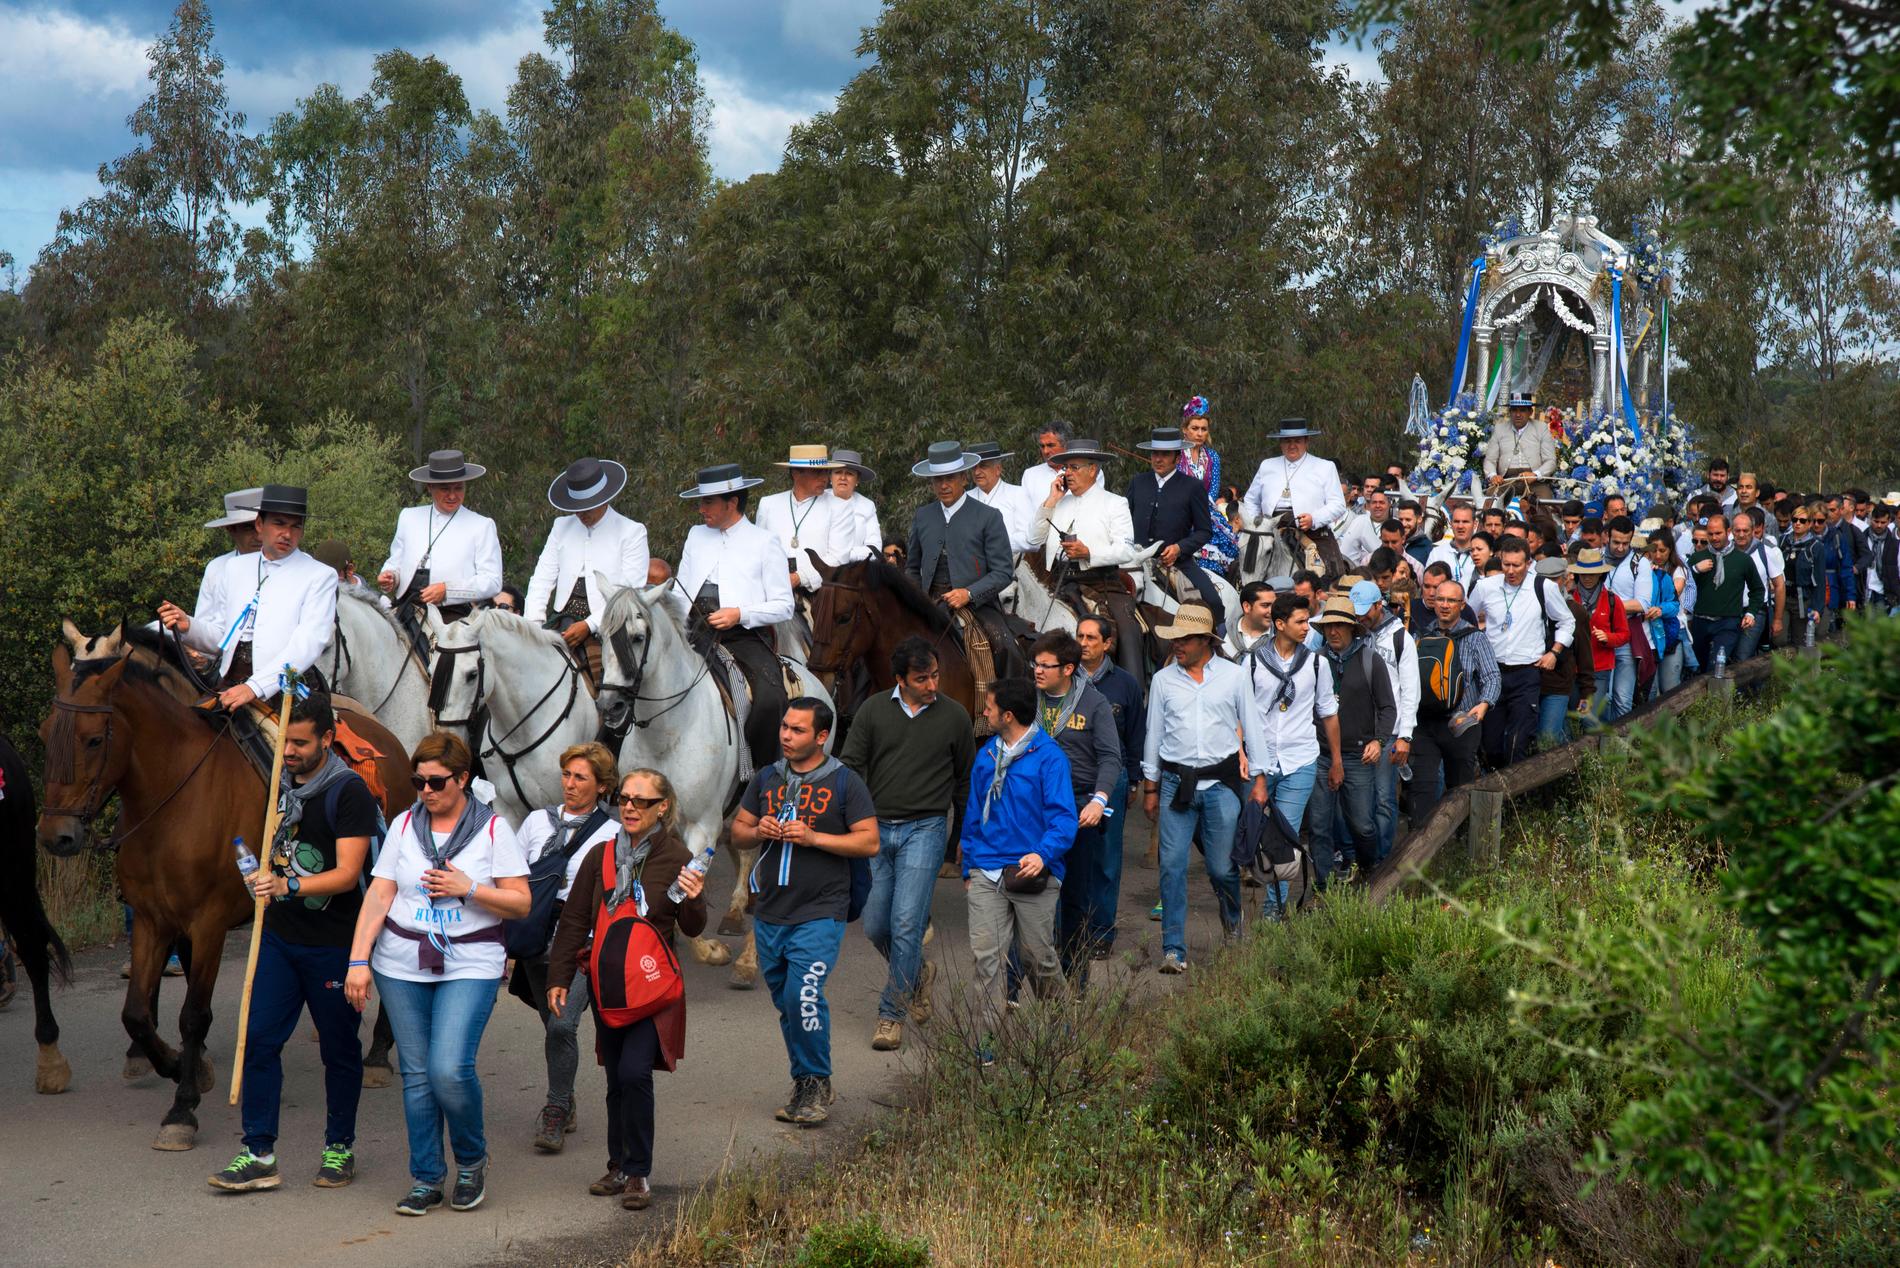 Romería de El Rocío är en procession/pilgrimsfärd i Spanien för att hedra Jungfrun av El Rocío.